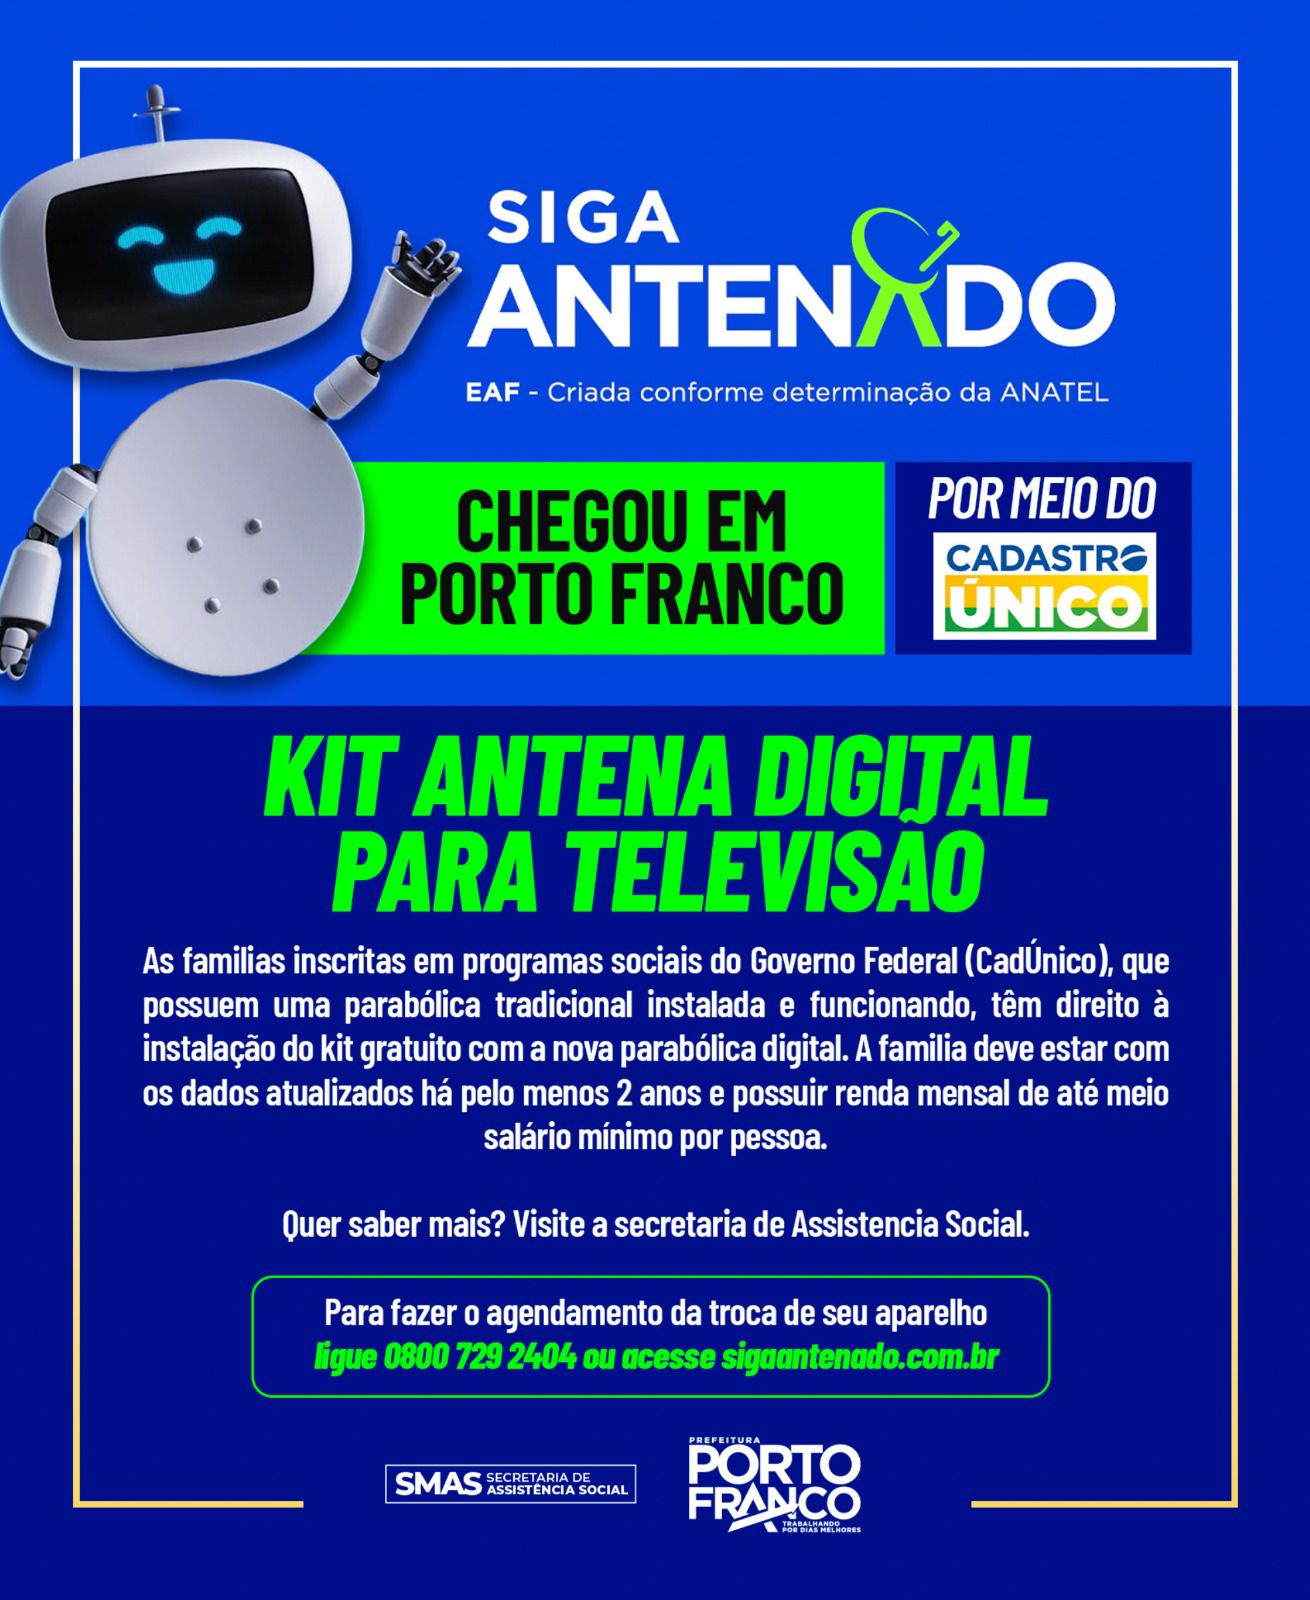 Siga Antenado abre agendamentos para instalação do kit gratuito com a nova parabólica digital